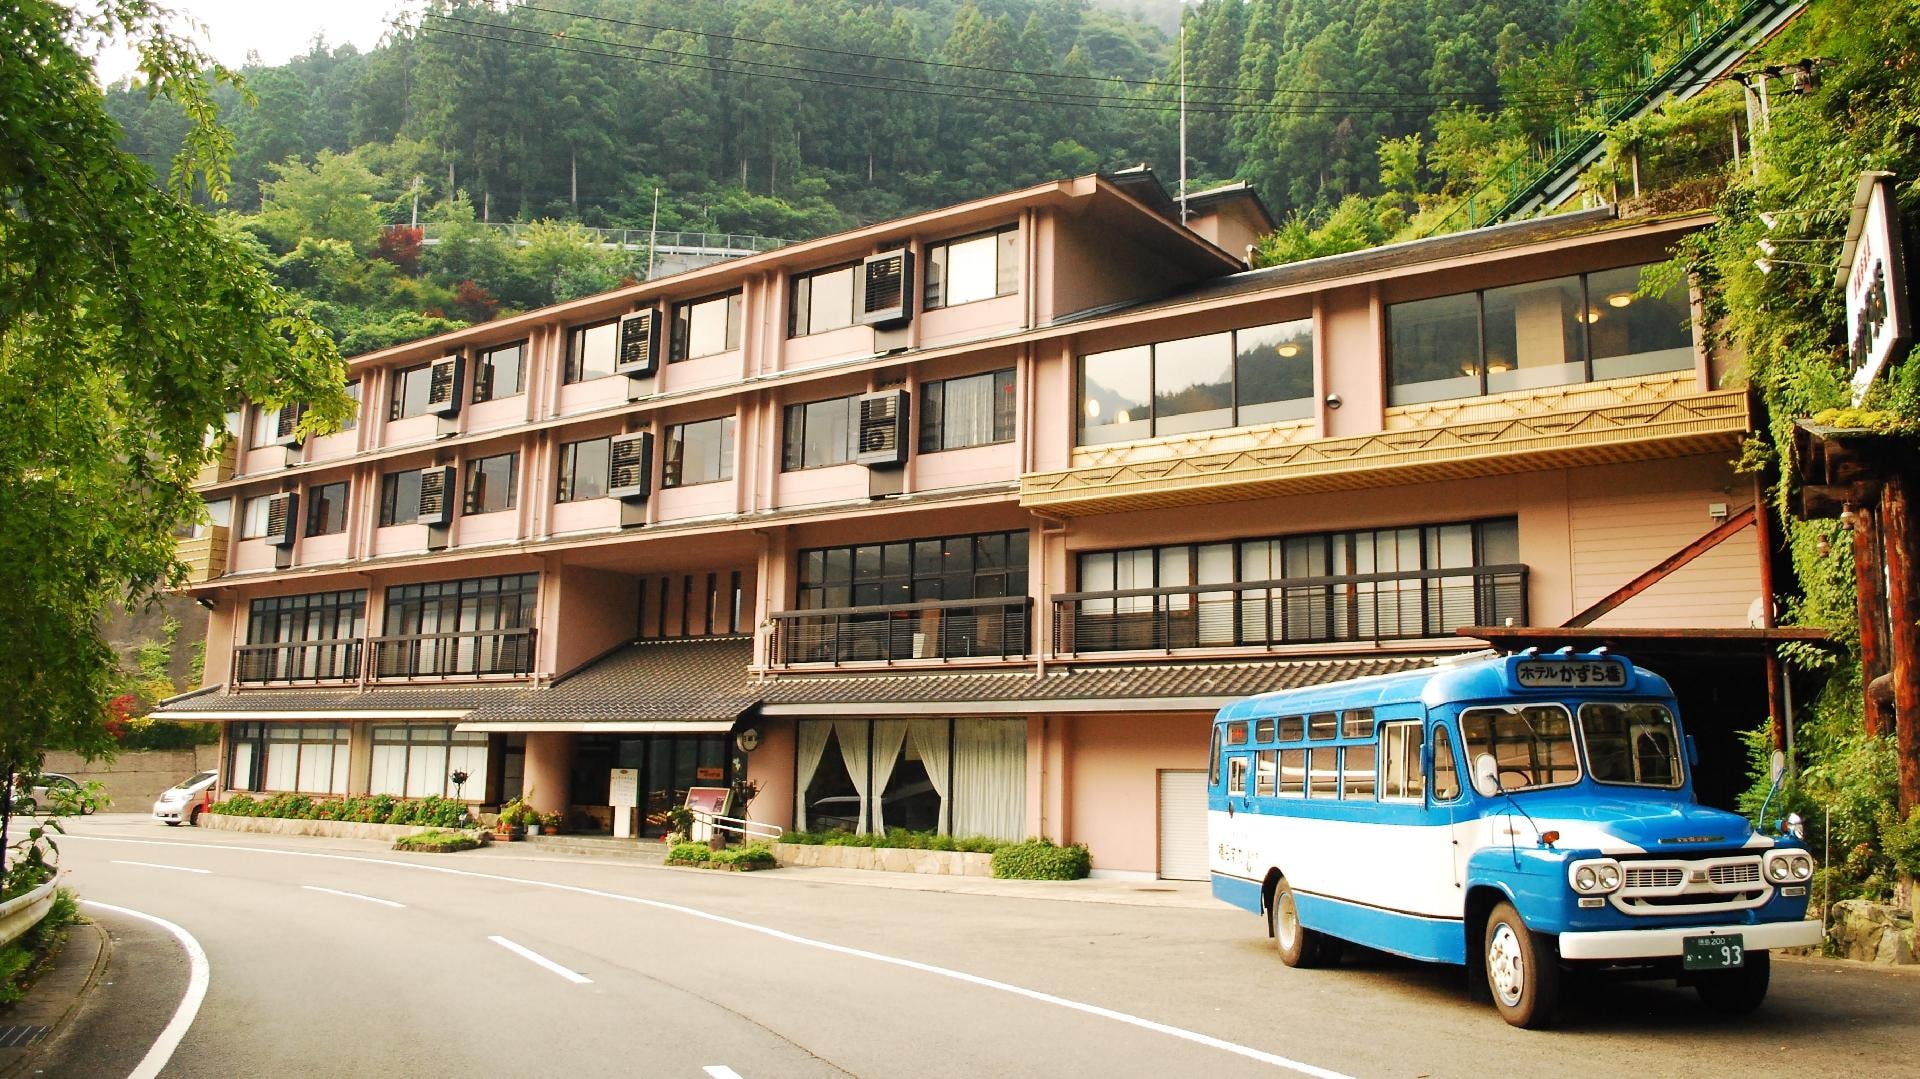 Foto panorama Hotel Kazurabashi